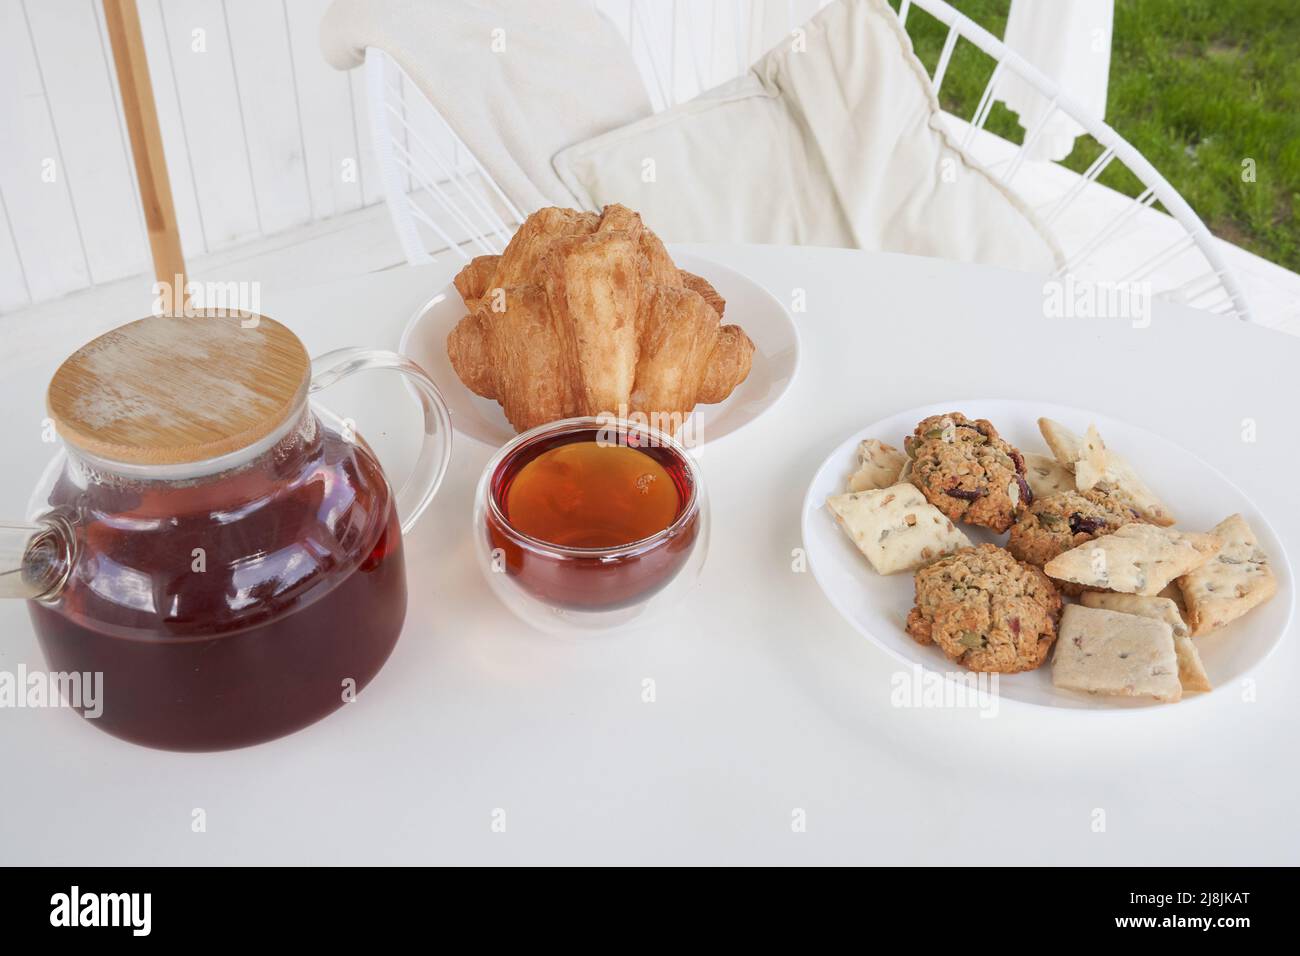 Sonntagsfrühstück im Hinterhof der Hütte. Frische süße Croissants mit Keksen auf dem Tisch. Transparente Teekane aus Glas mit gebrühtem Tee. Hochwertige Fotos Stockfoto